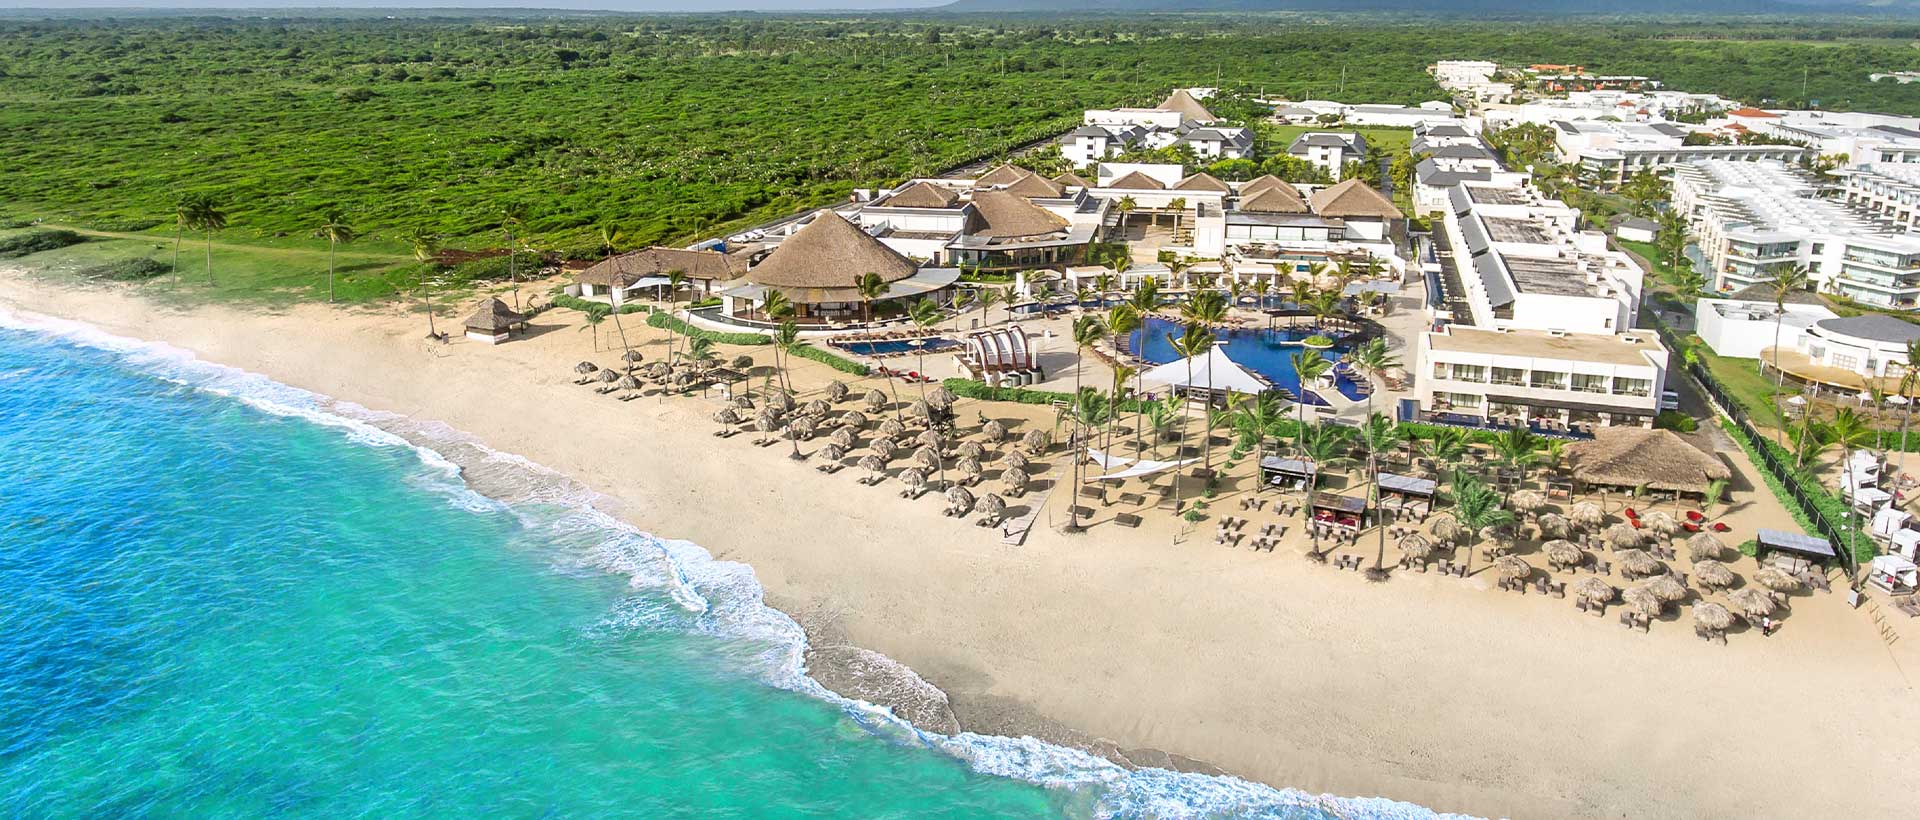 Royalton CHIC Punta Cana, All-Inclusive Resort & Casino